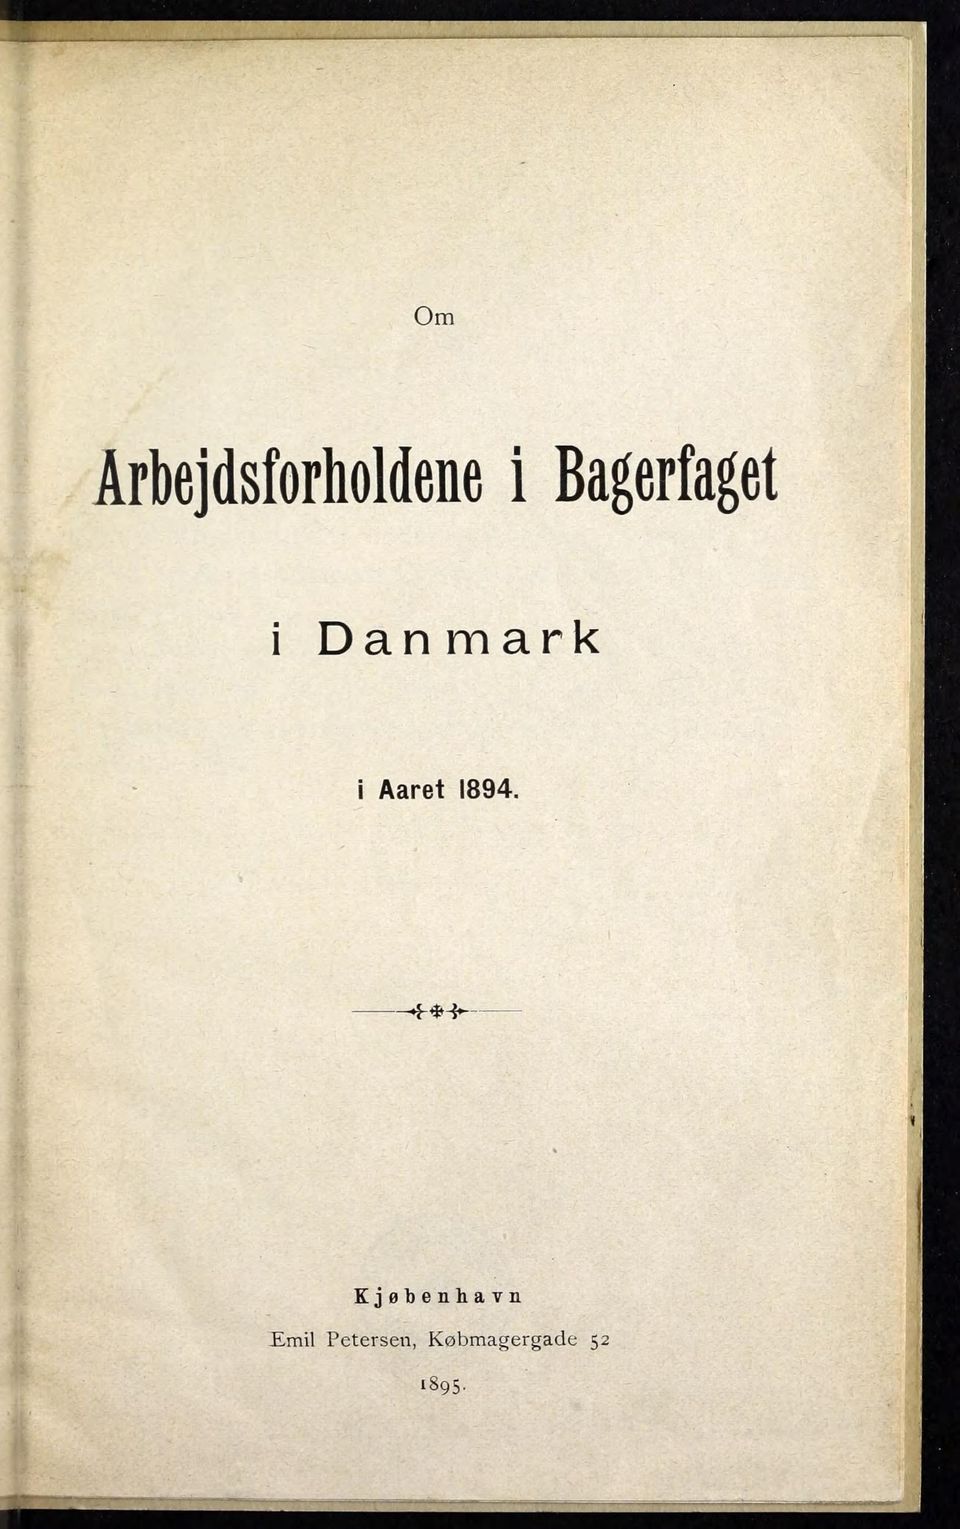 Aaret 1894.